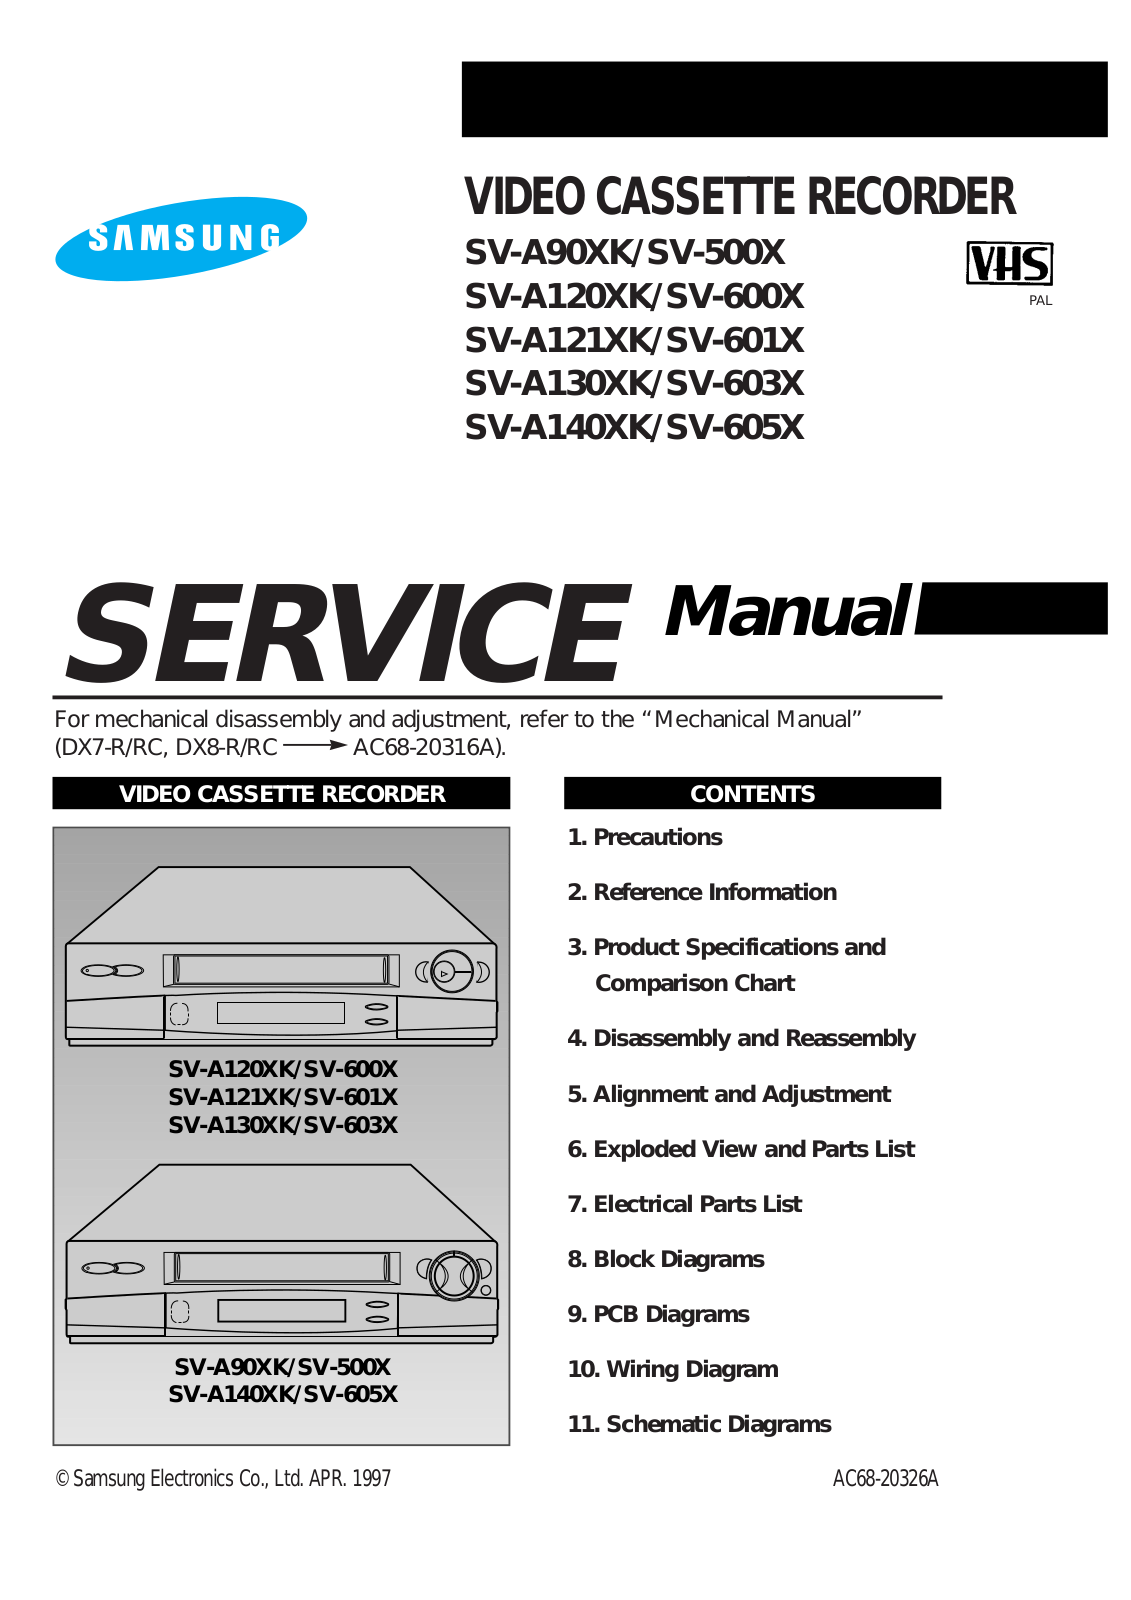 Samsung SV-605X, SV-A140XK, SV-603X, SV-A130XK, SV-601X Service Manual